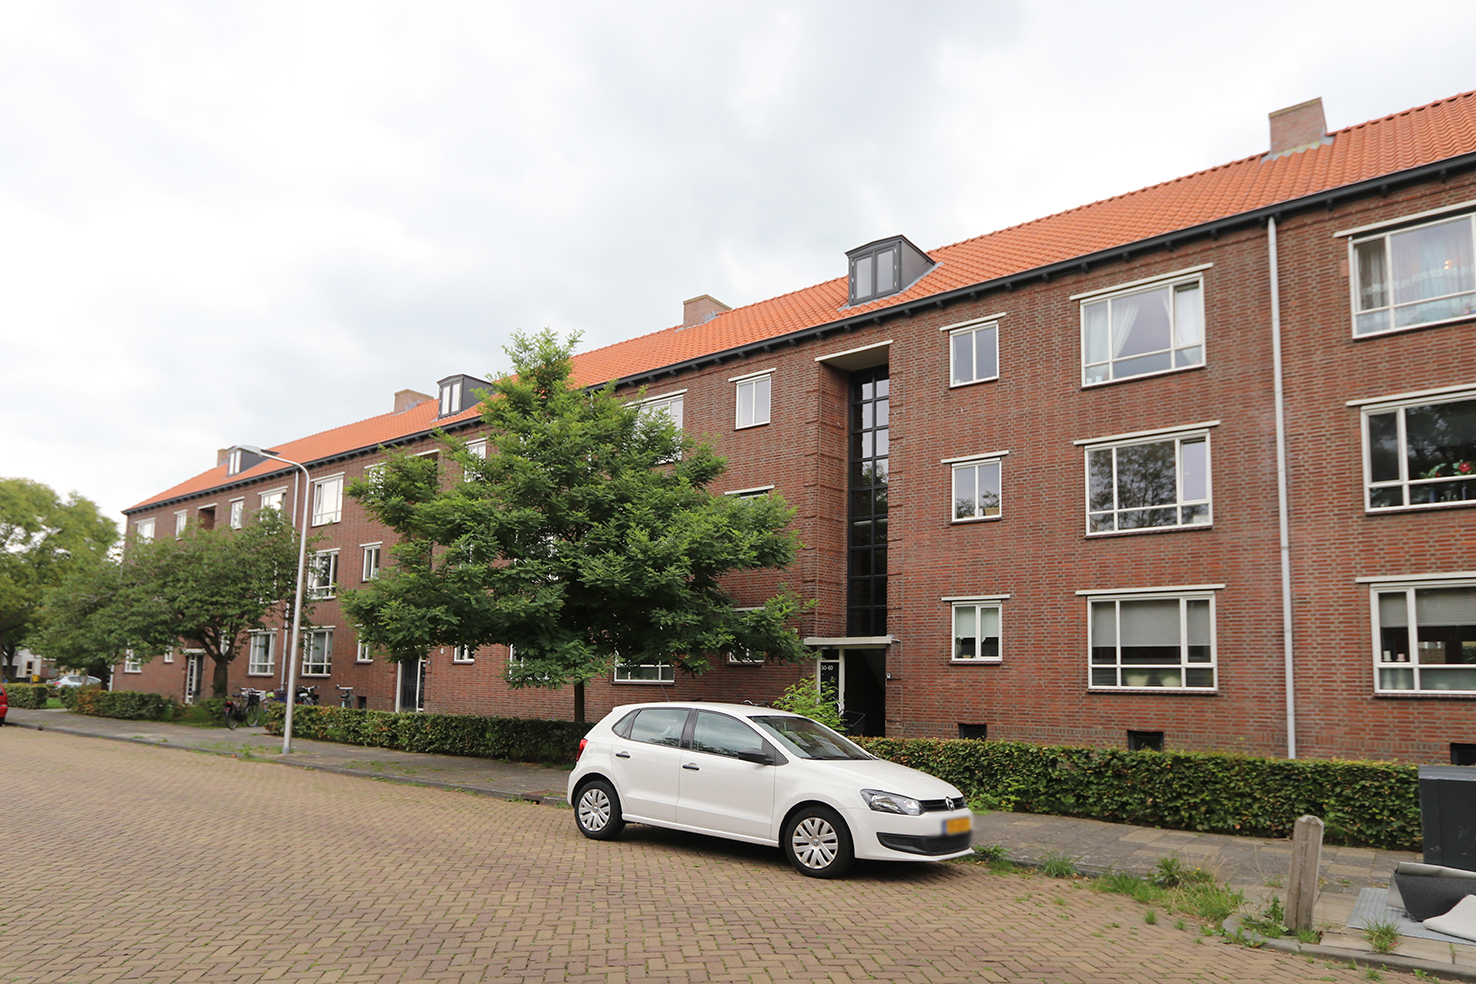 Anthonie van der Heimstraat 52, 8022 CE Zwolle, Nederland